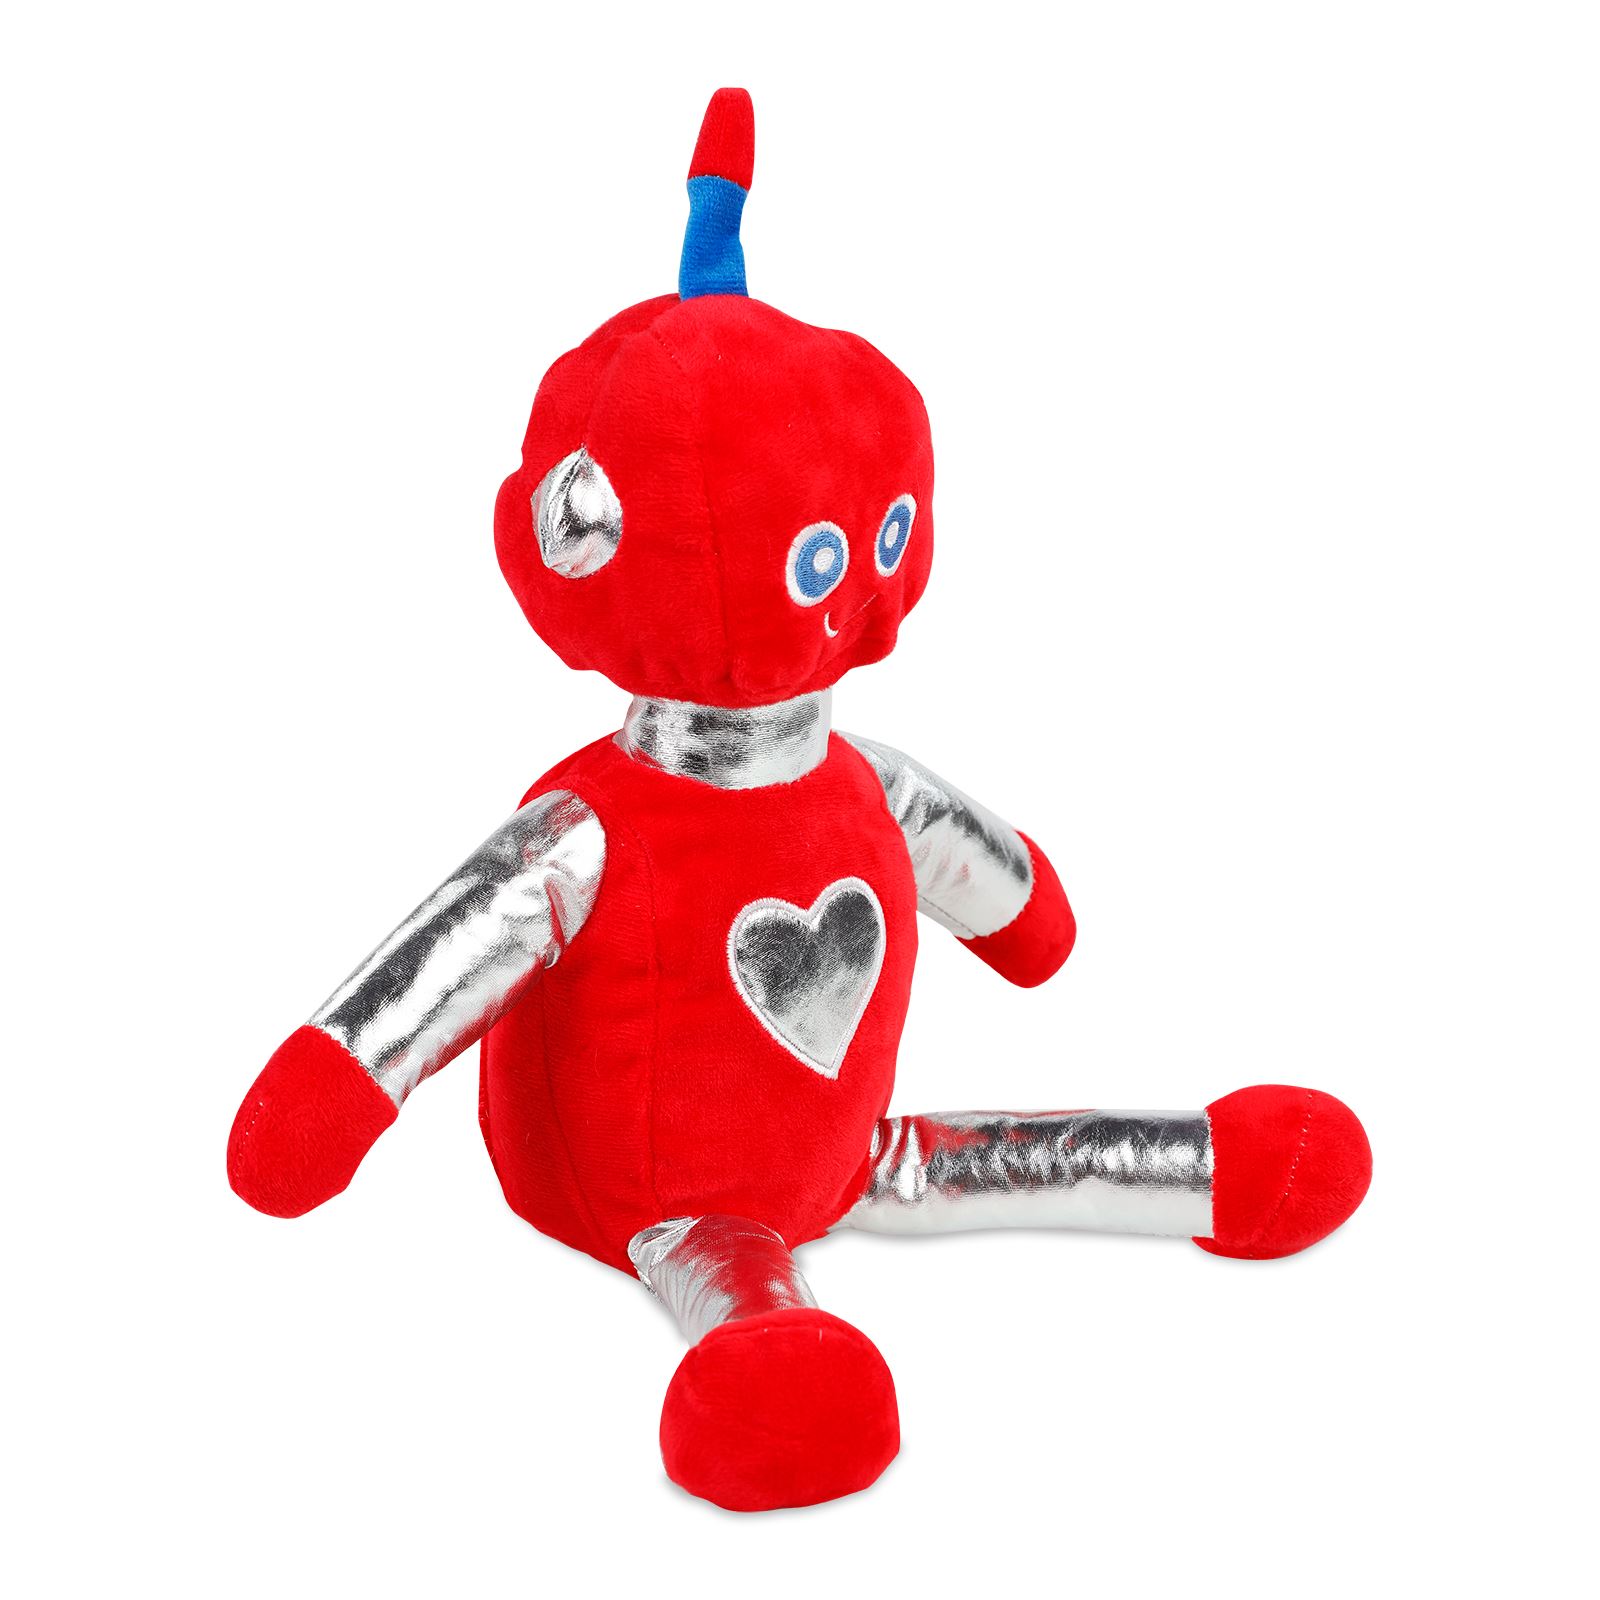 Halley Oyuncak Peluş Robotlar 35 cm Kırmızı